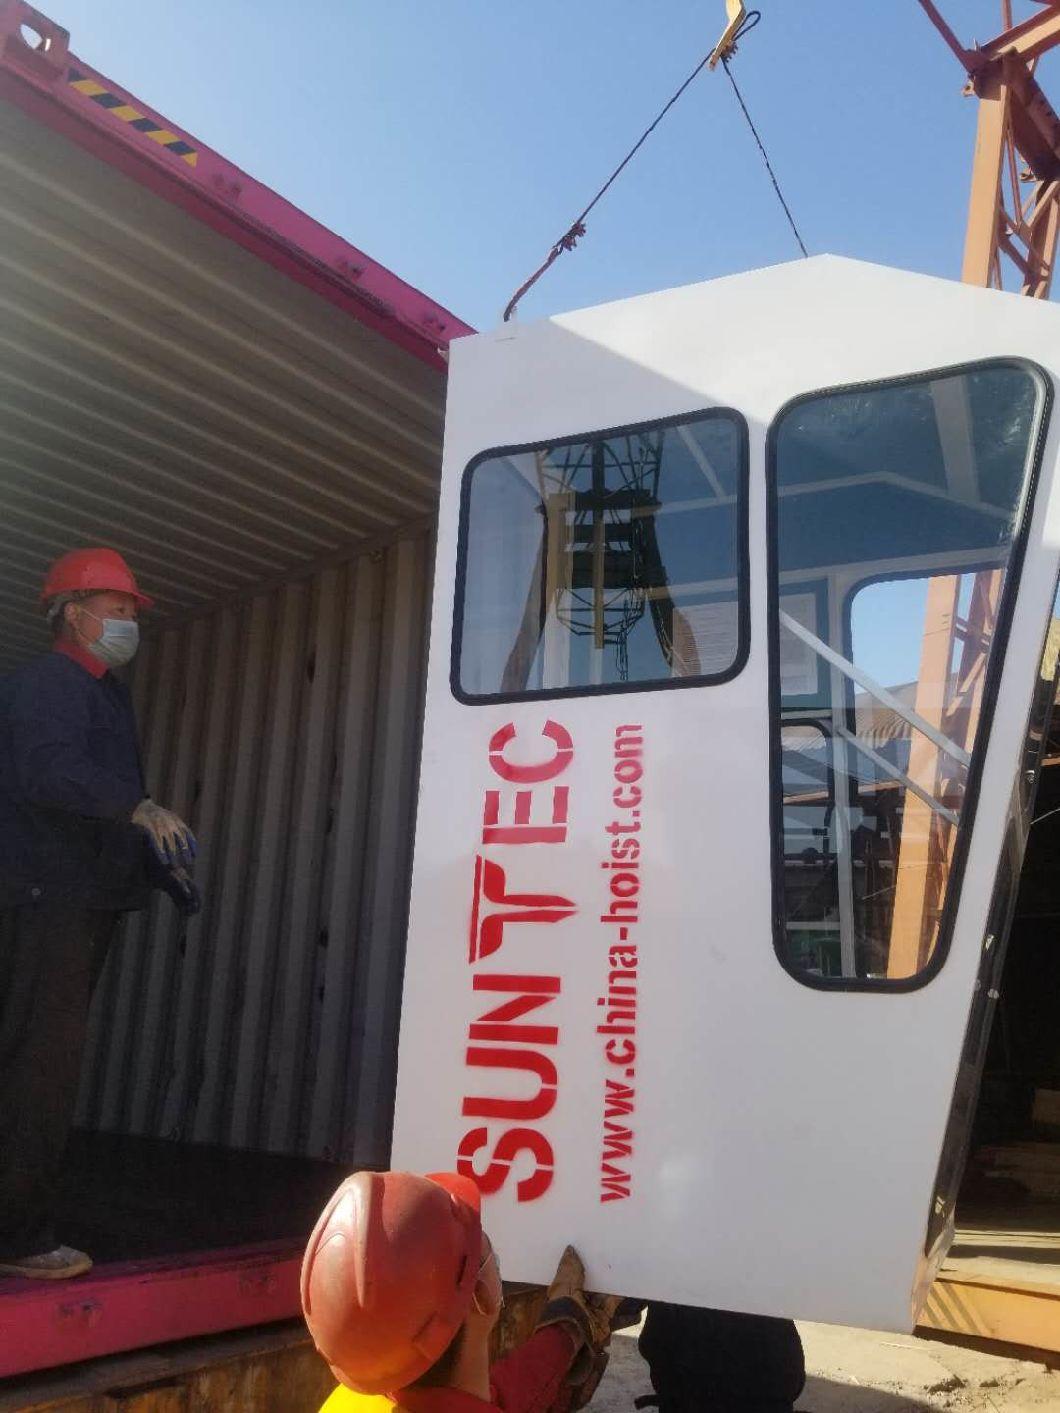 Suntec Tower Crane Qtz125 10t Factory Production Price